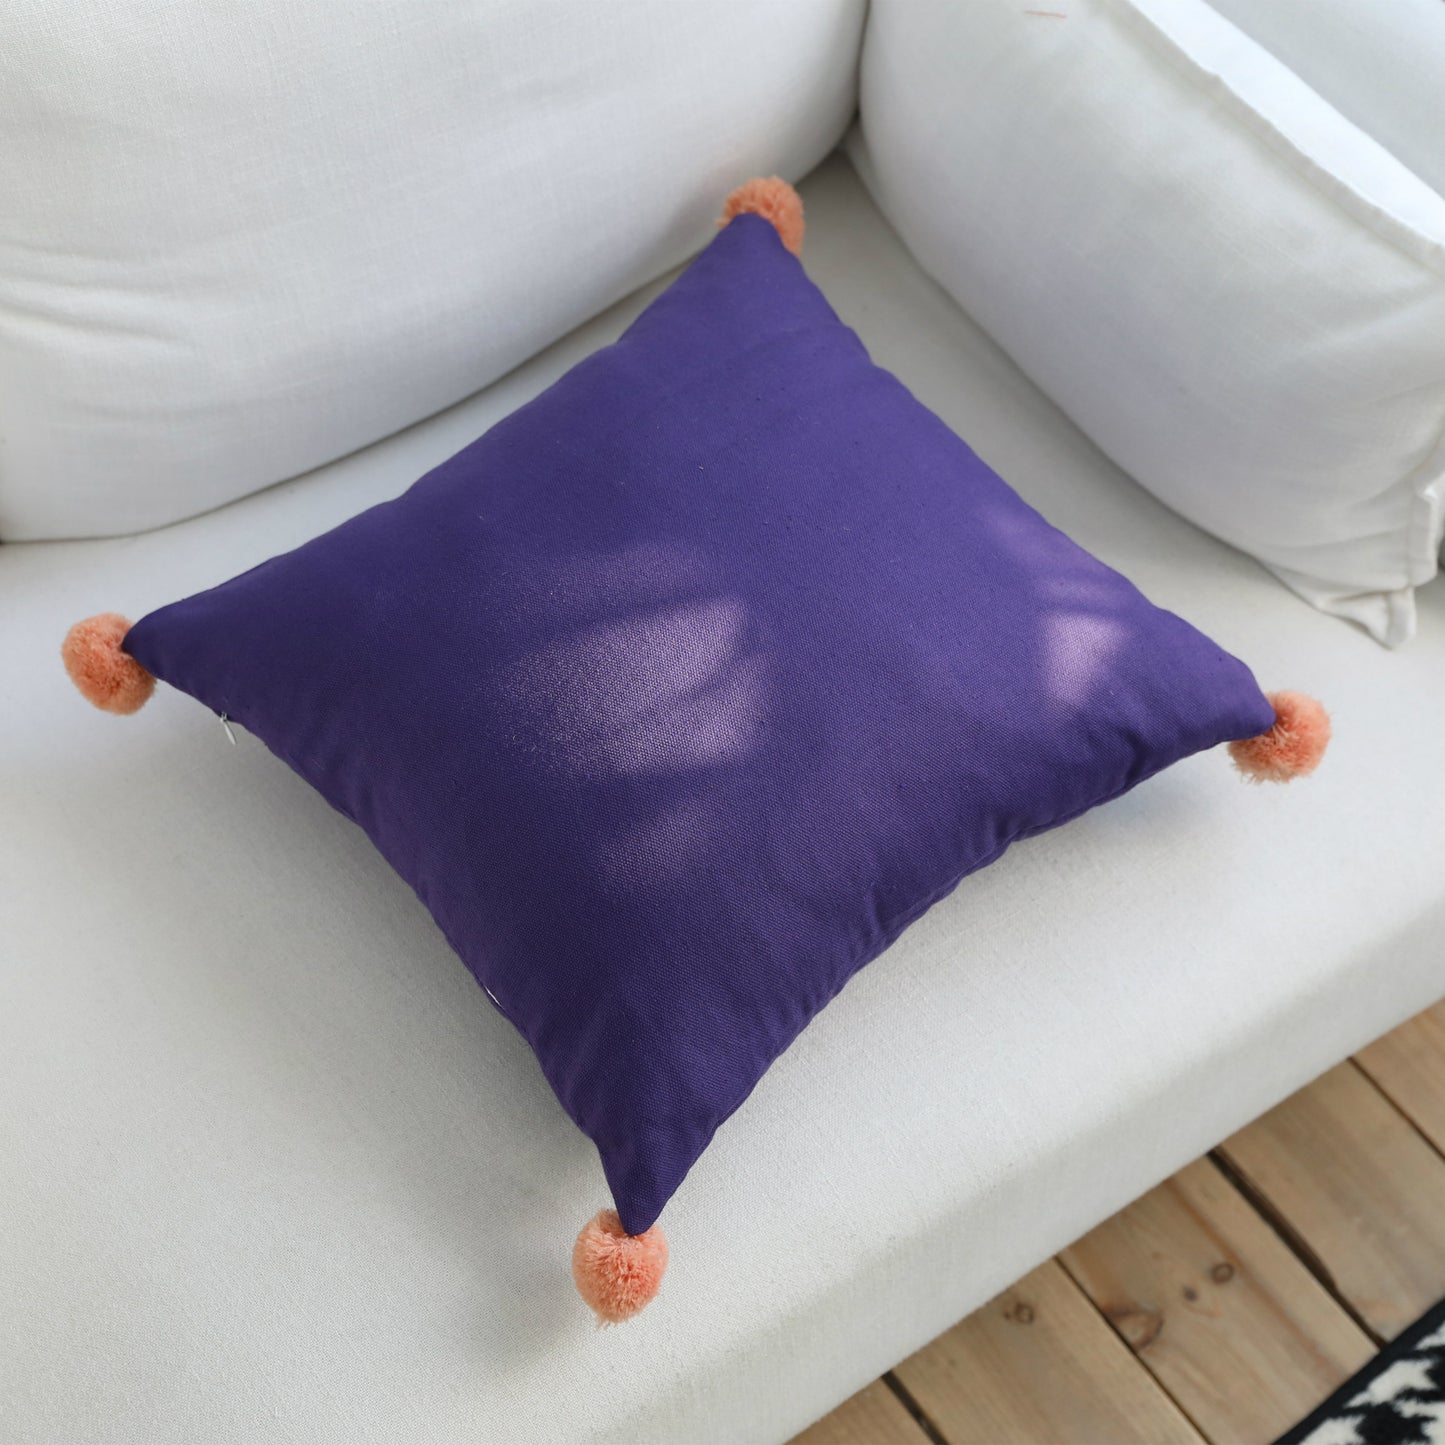 Geometric Cotton Linen Waist Pillow Pillow Cushion Waist Pillow